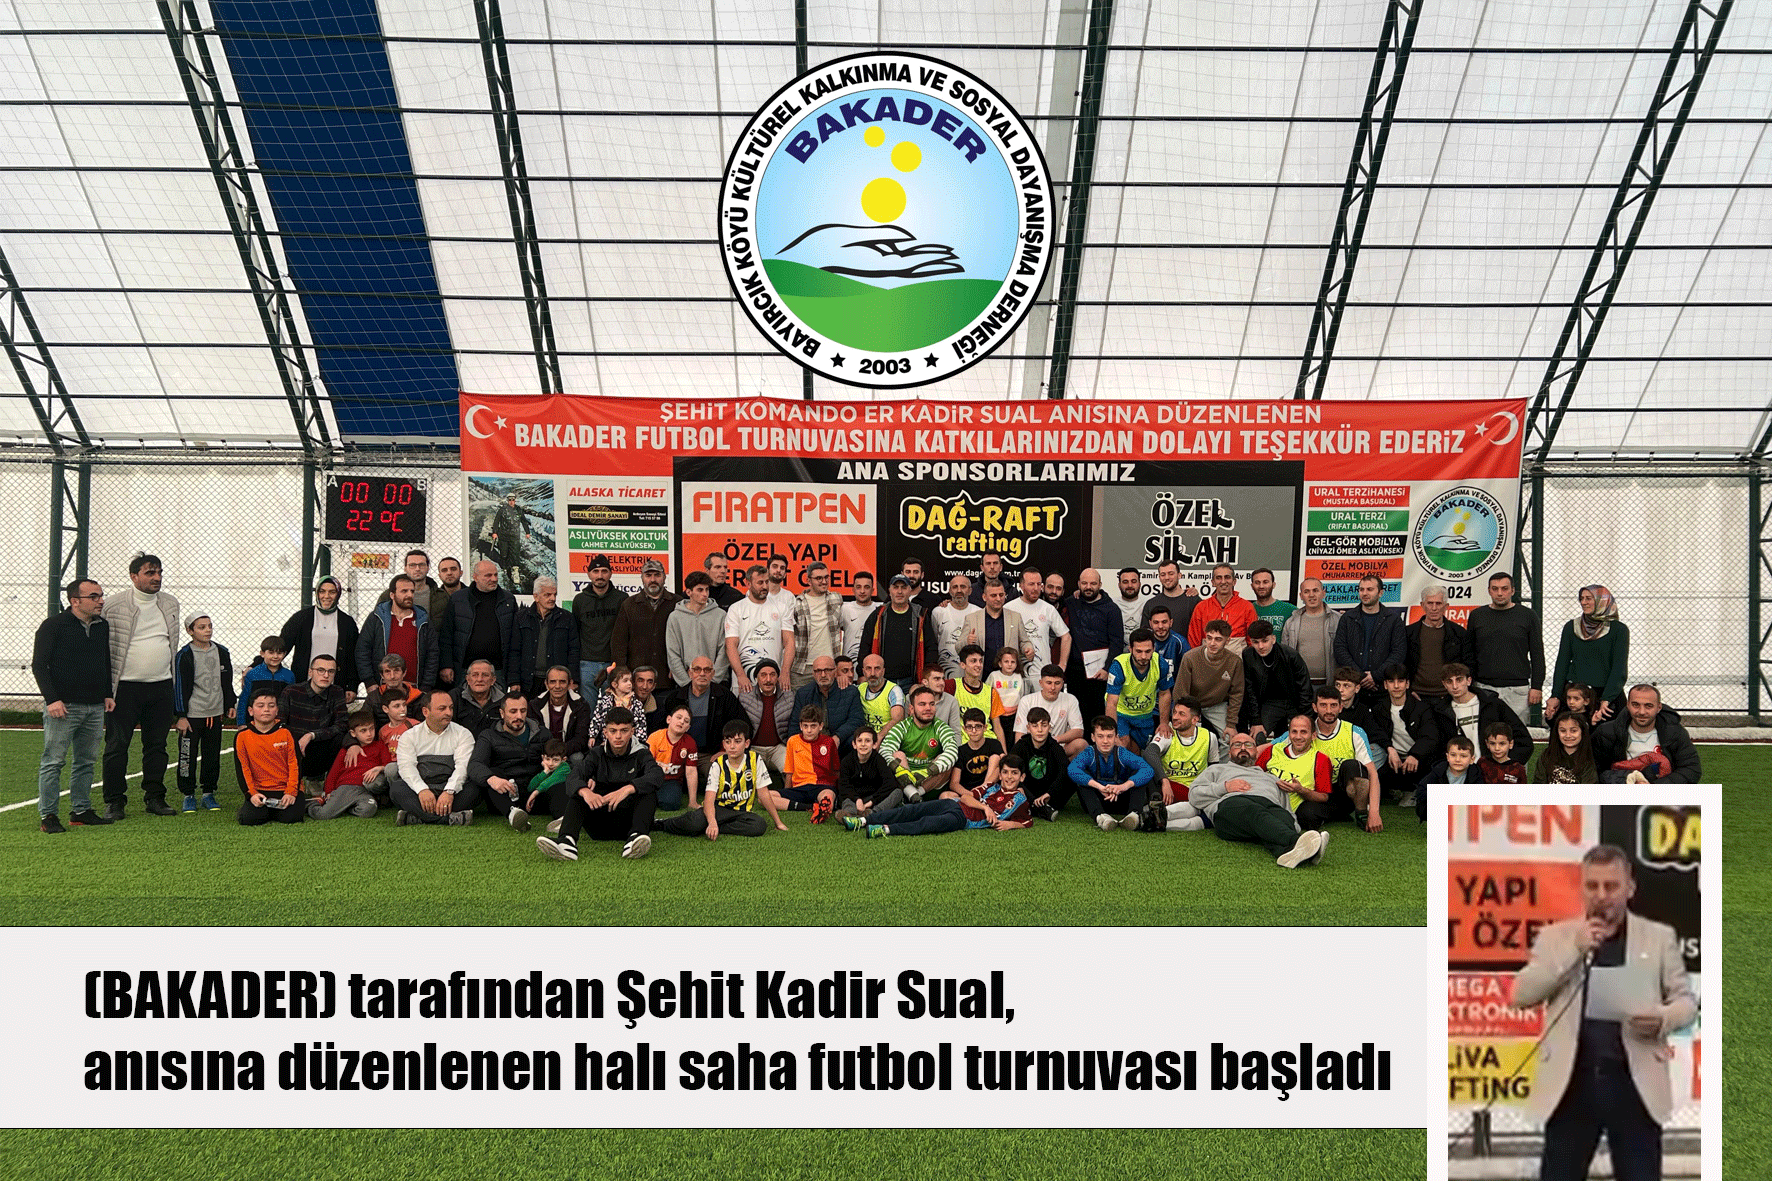 (BAKADER) tarafından Şehit Kadir Sual, anısına düzenlenen halı saha futbol turnuvası başladı  